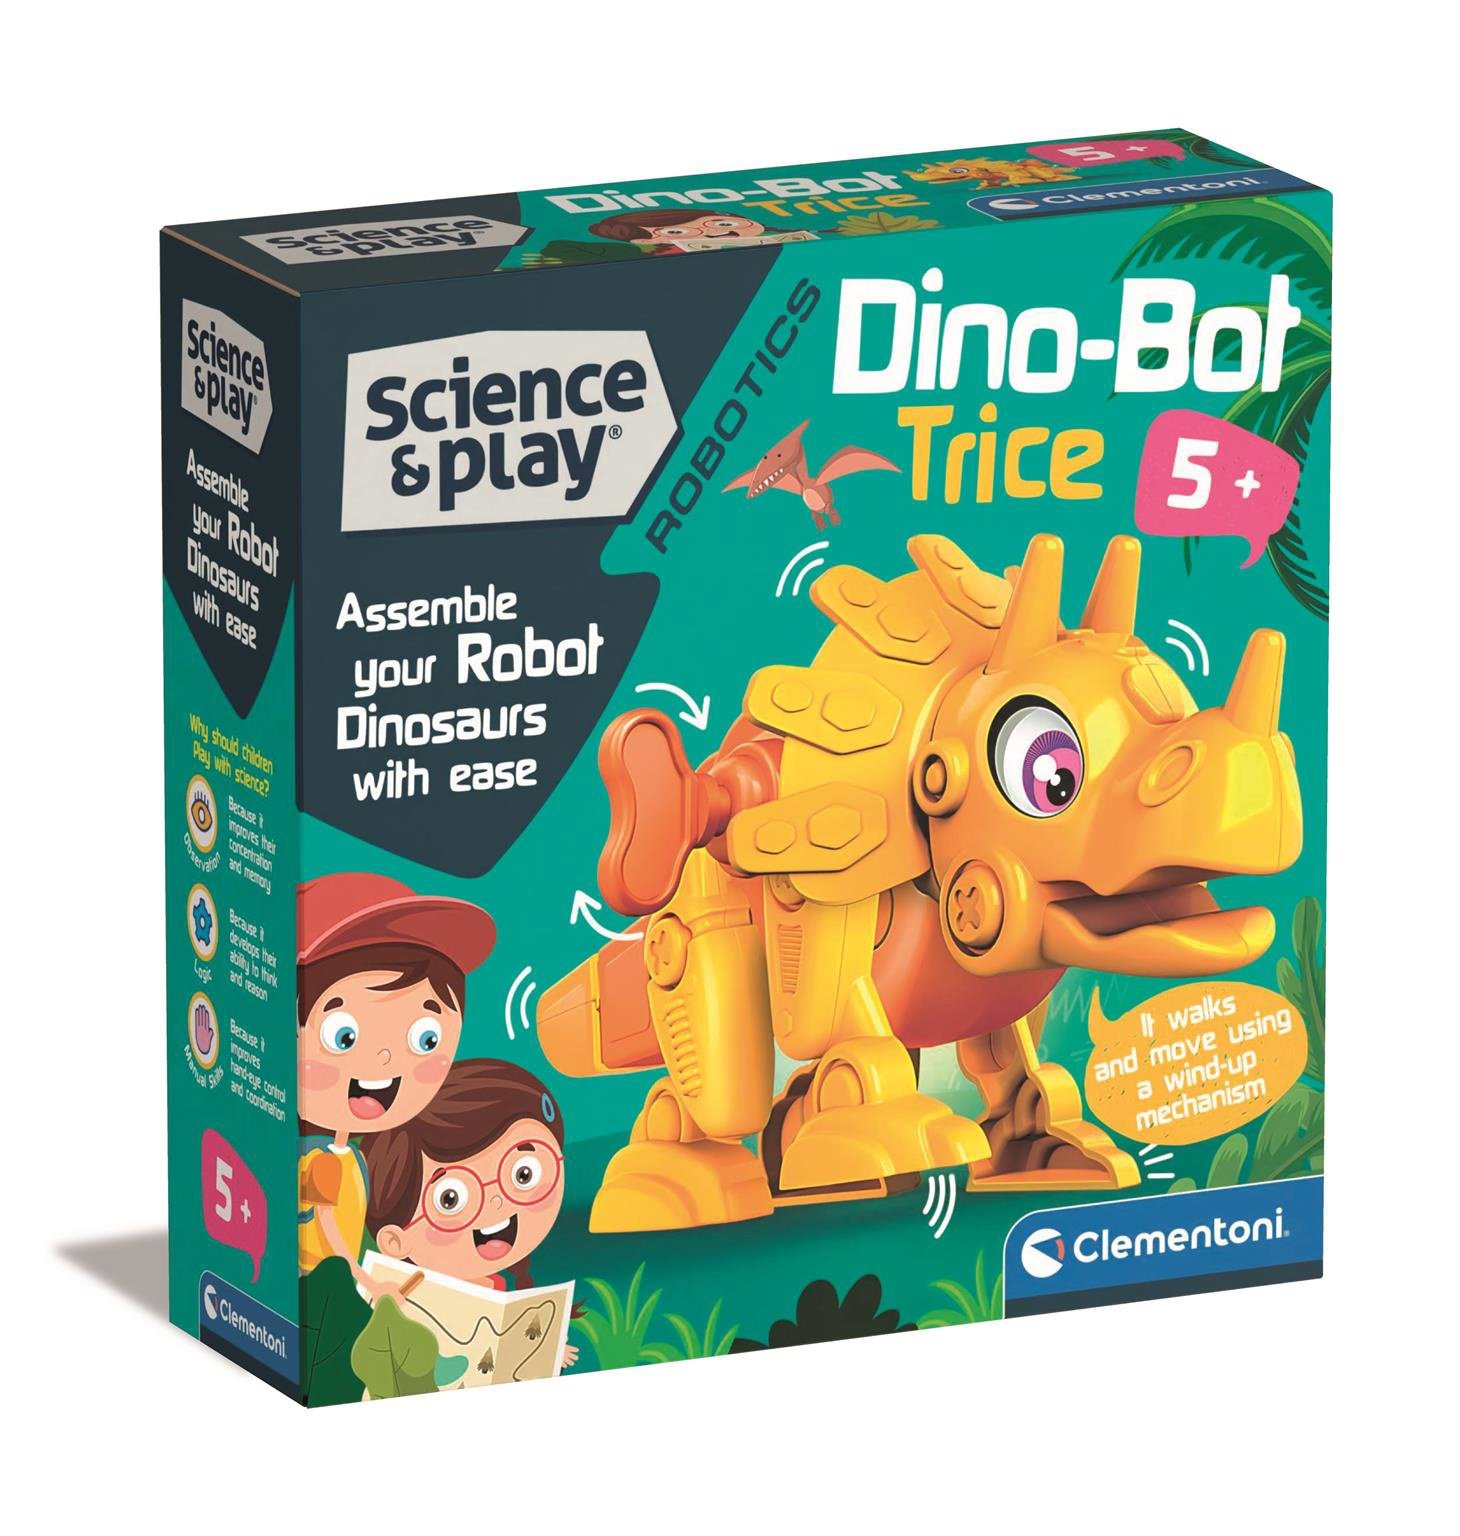 Billede af Clementoni - Science & Play - Dinobot Trice (75074)